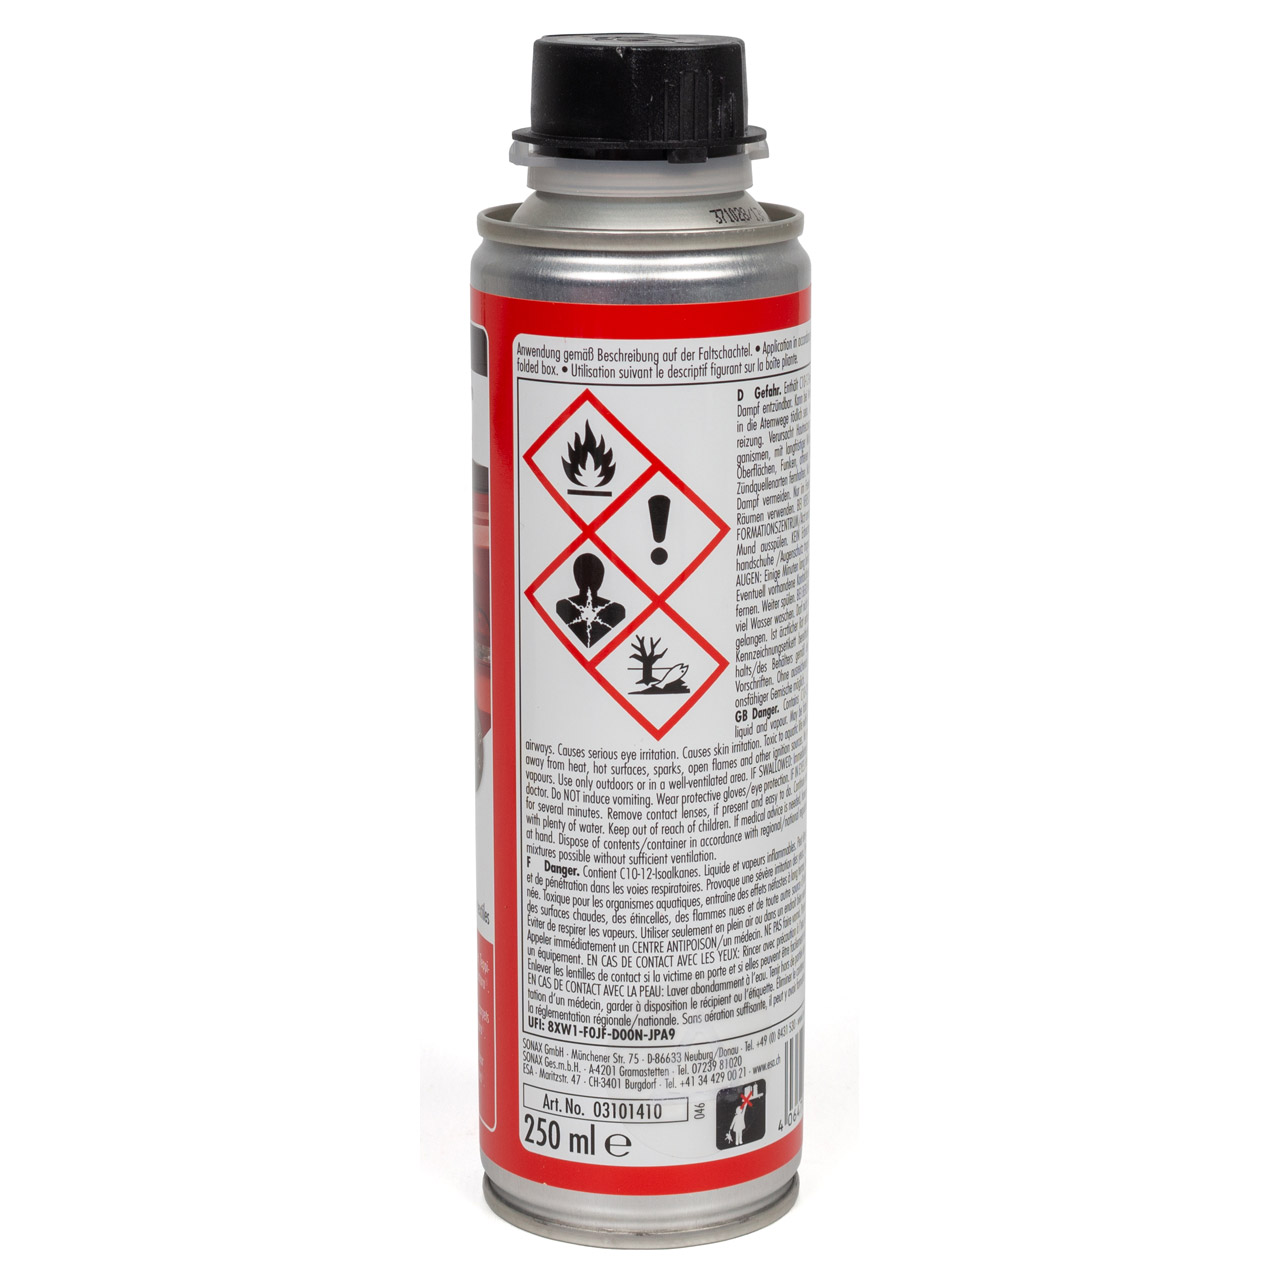 SONAX 310141 Verdeck- & Textil-Imprägnierung Spray Nässeschutz 250ml + Schwamm